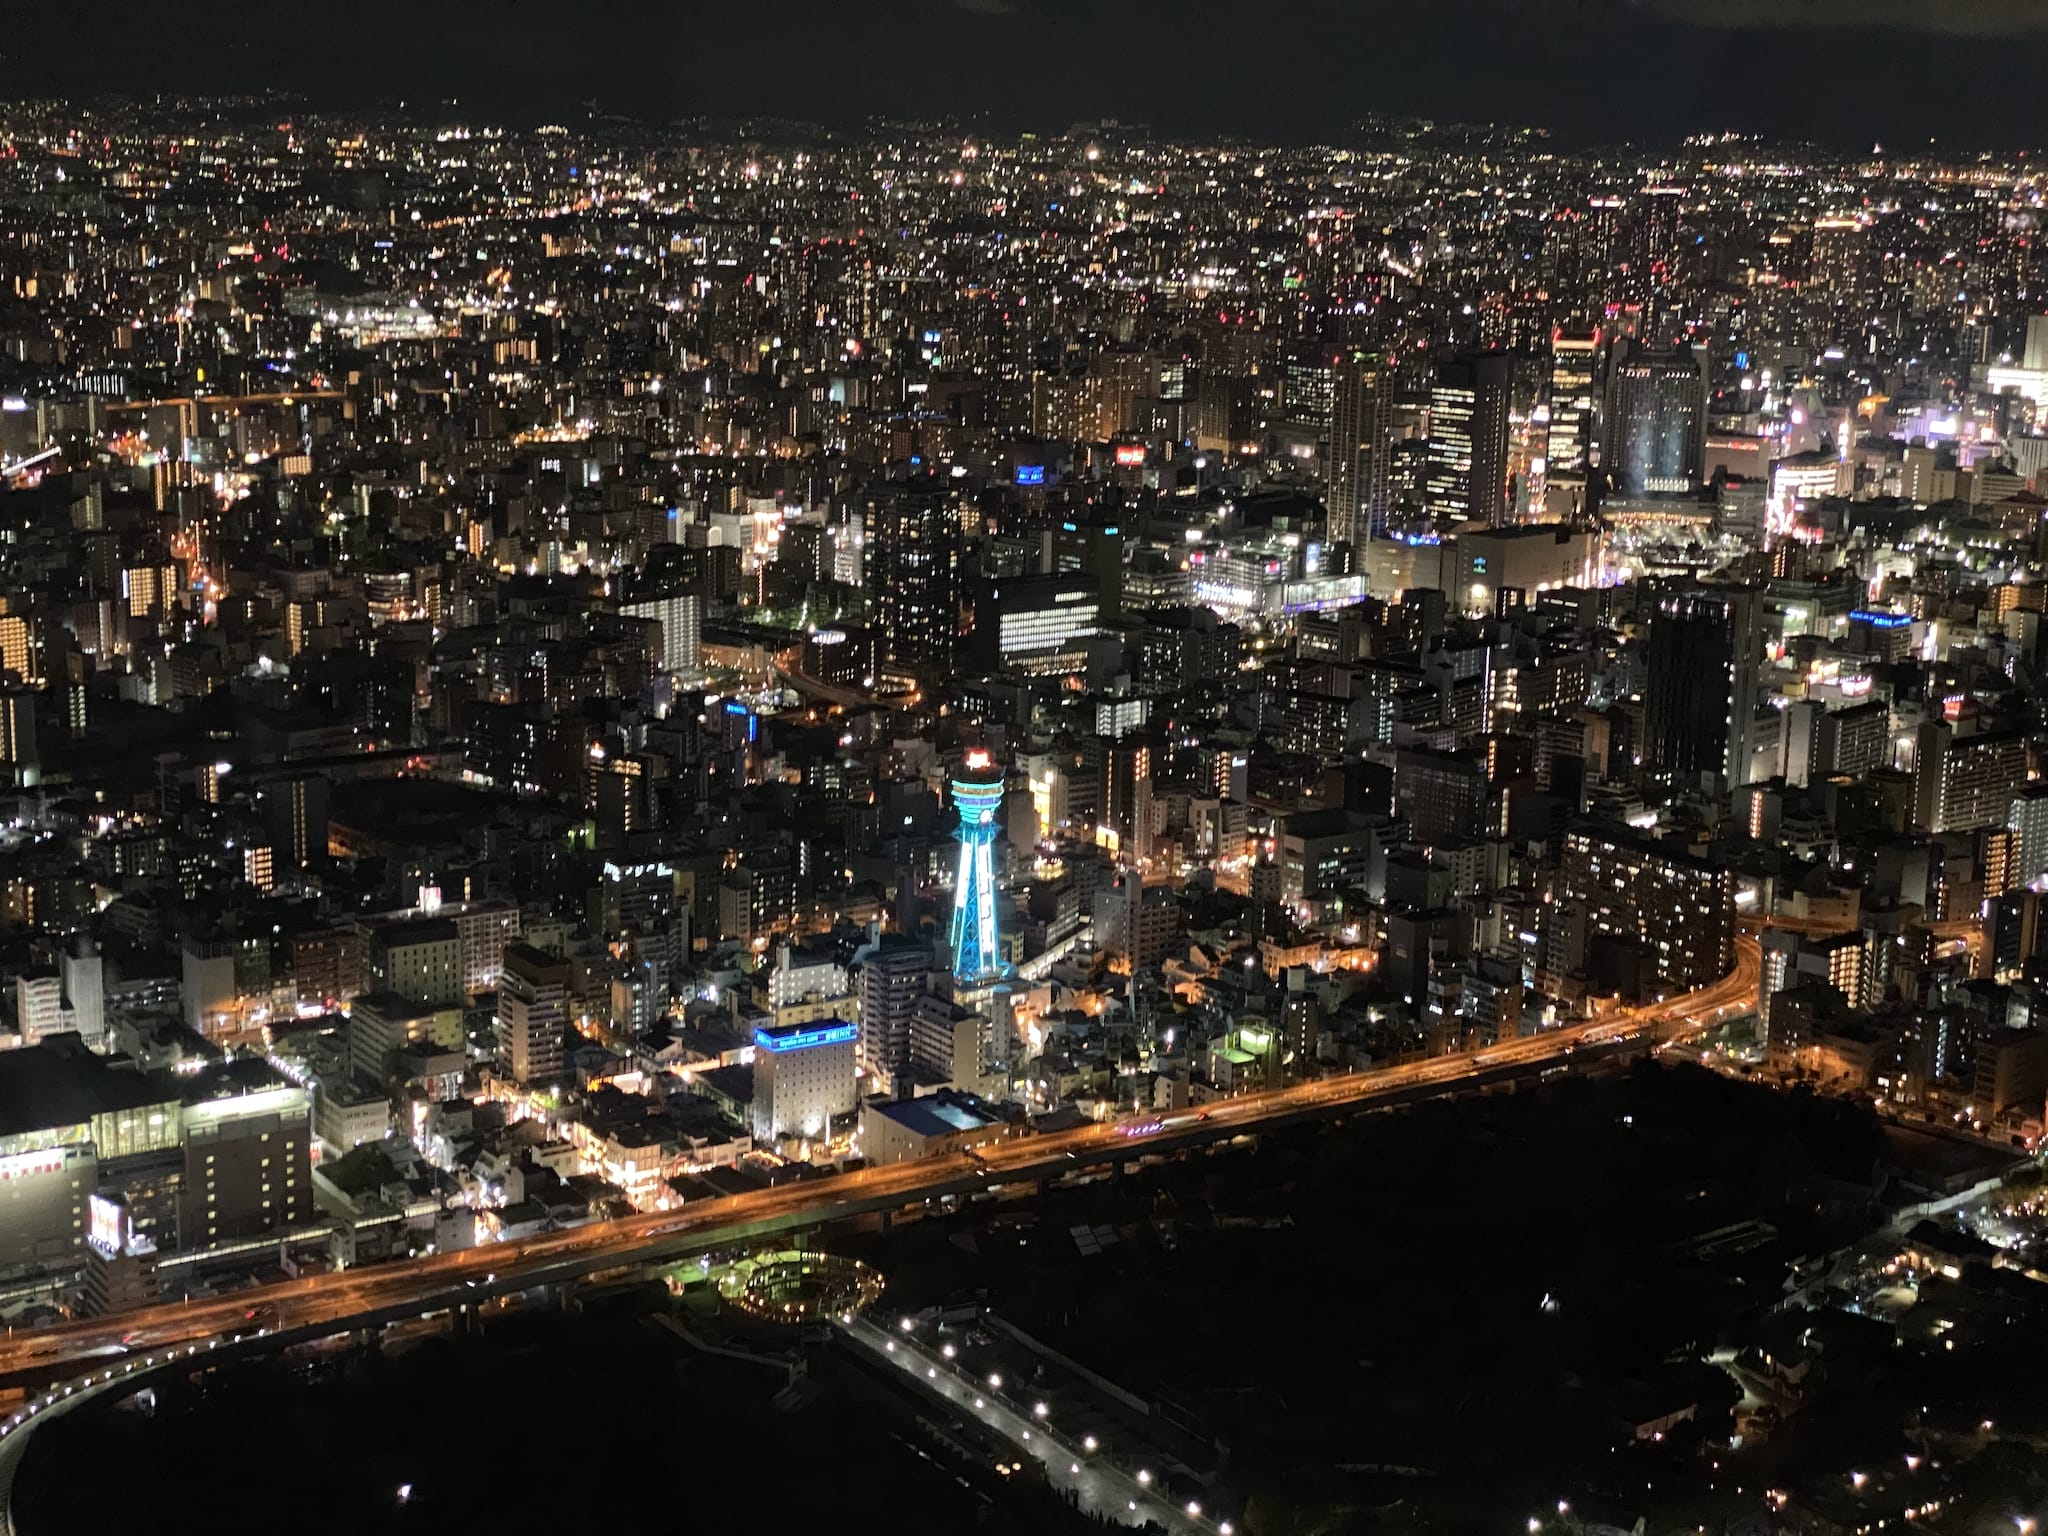 View from Harukas 300, looking at Osaka at night